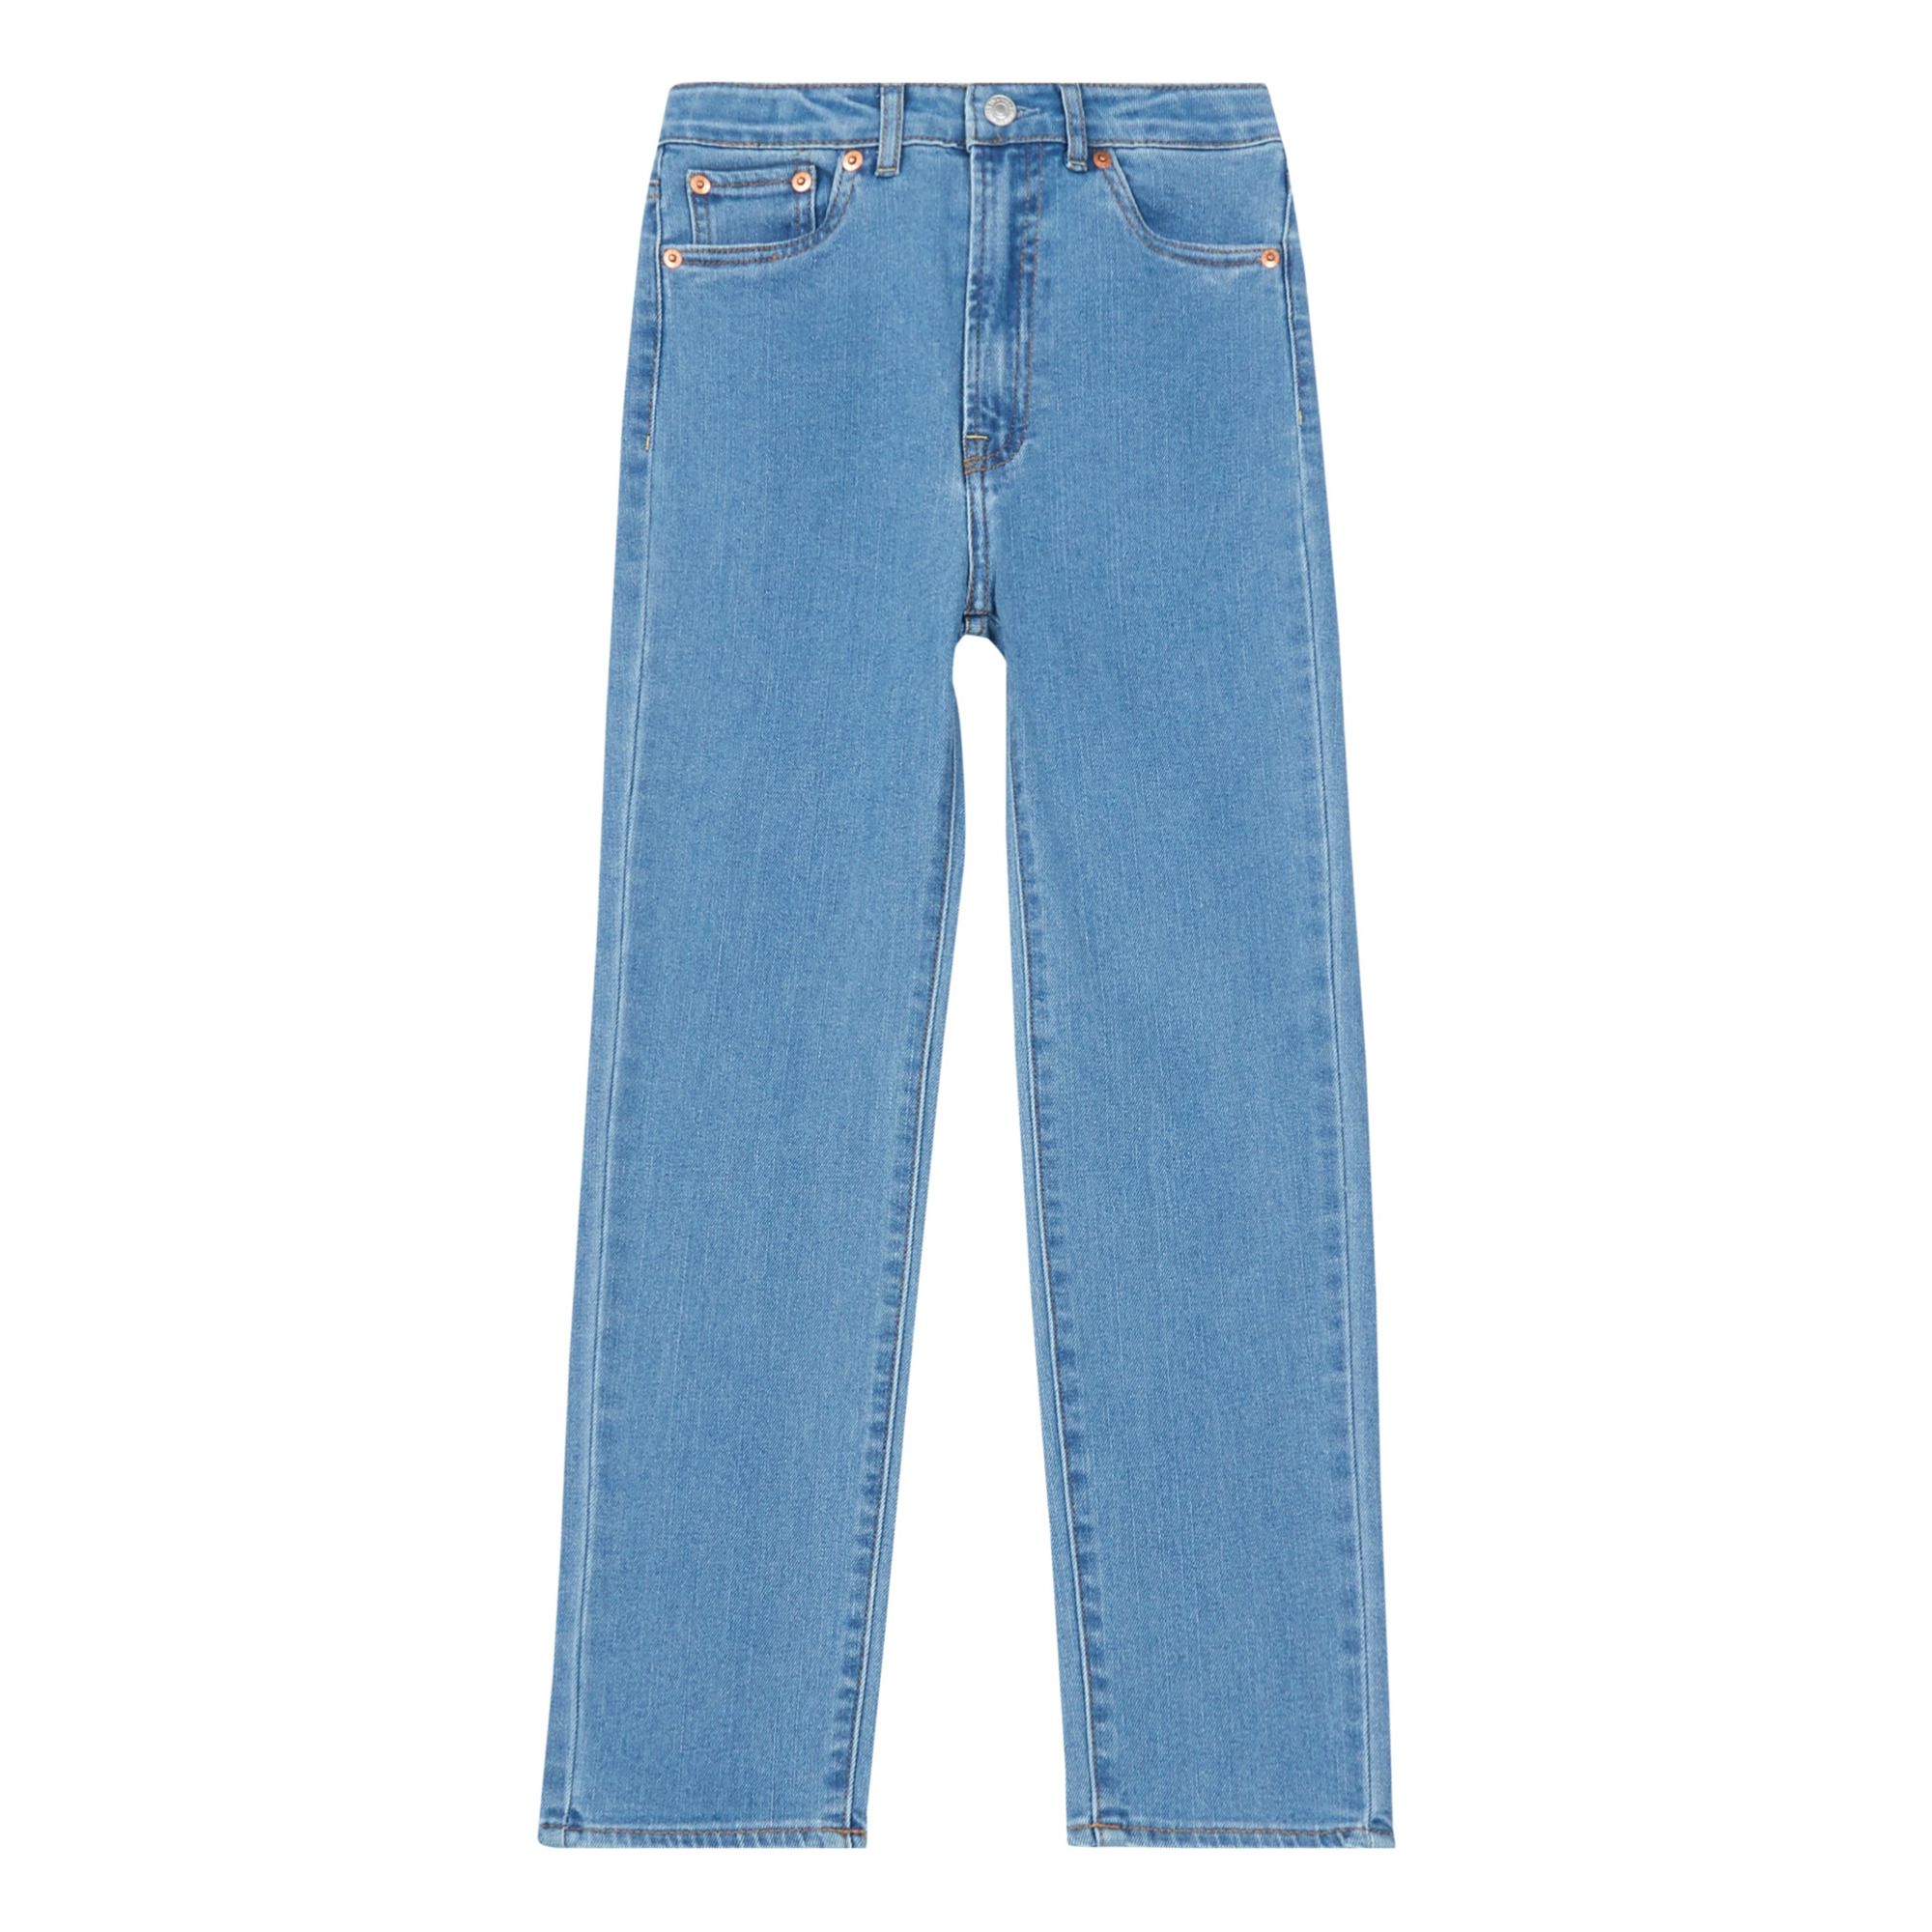 Levi's - Jean Droit Taille Haute Ribcage - Fille - Bleu jean